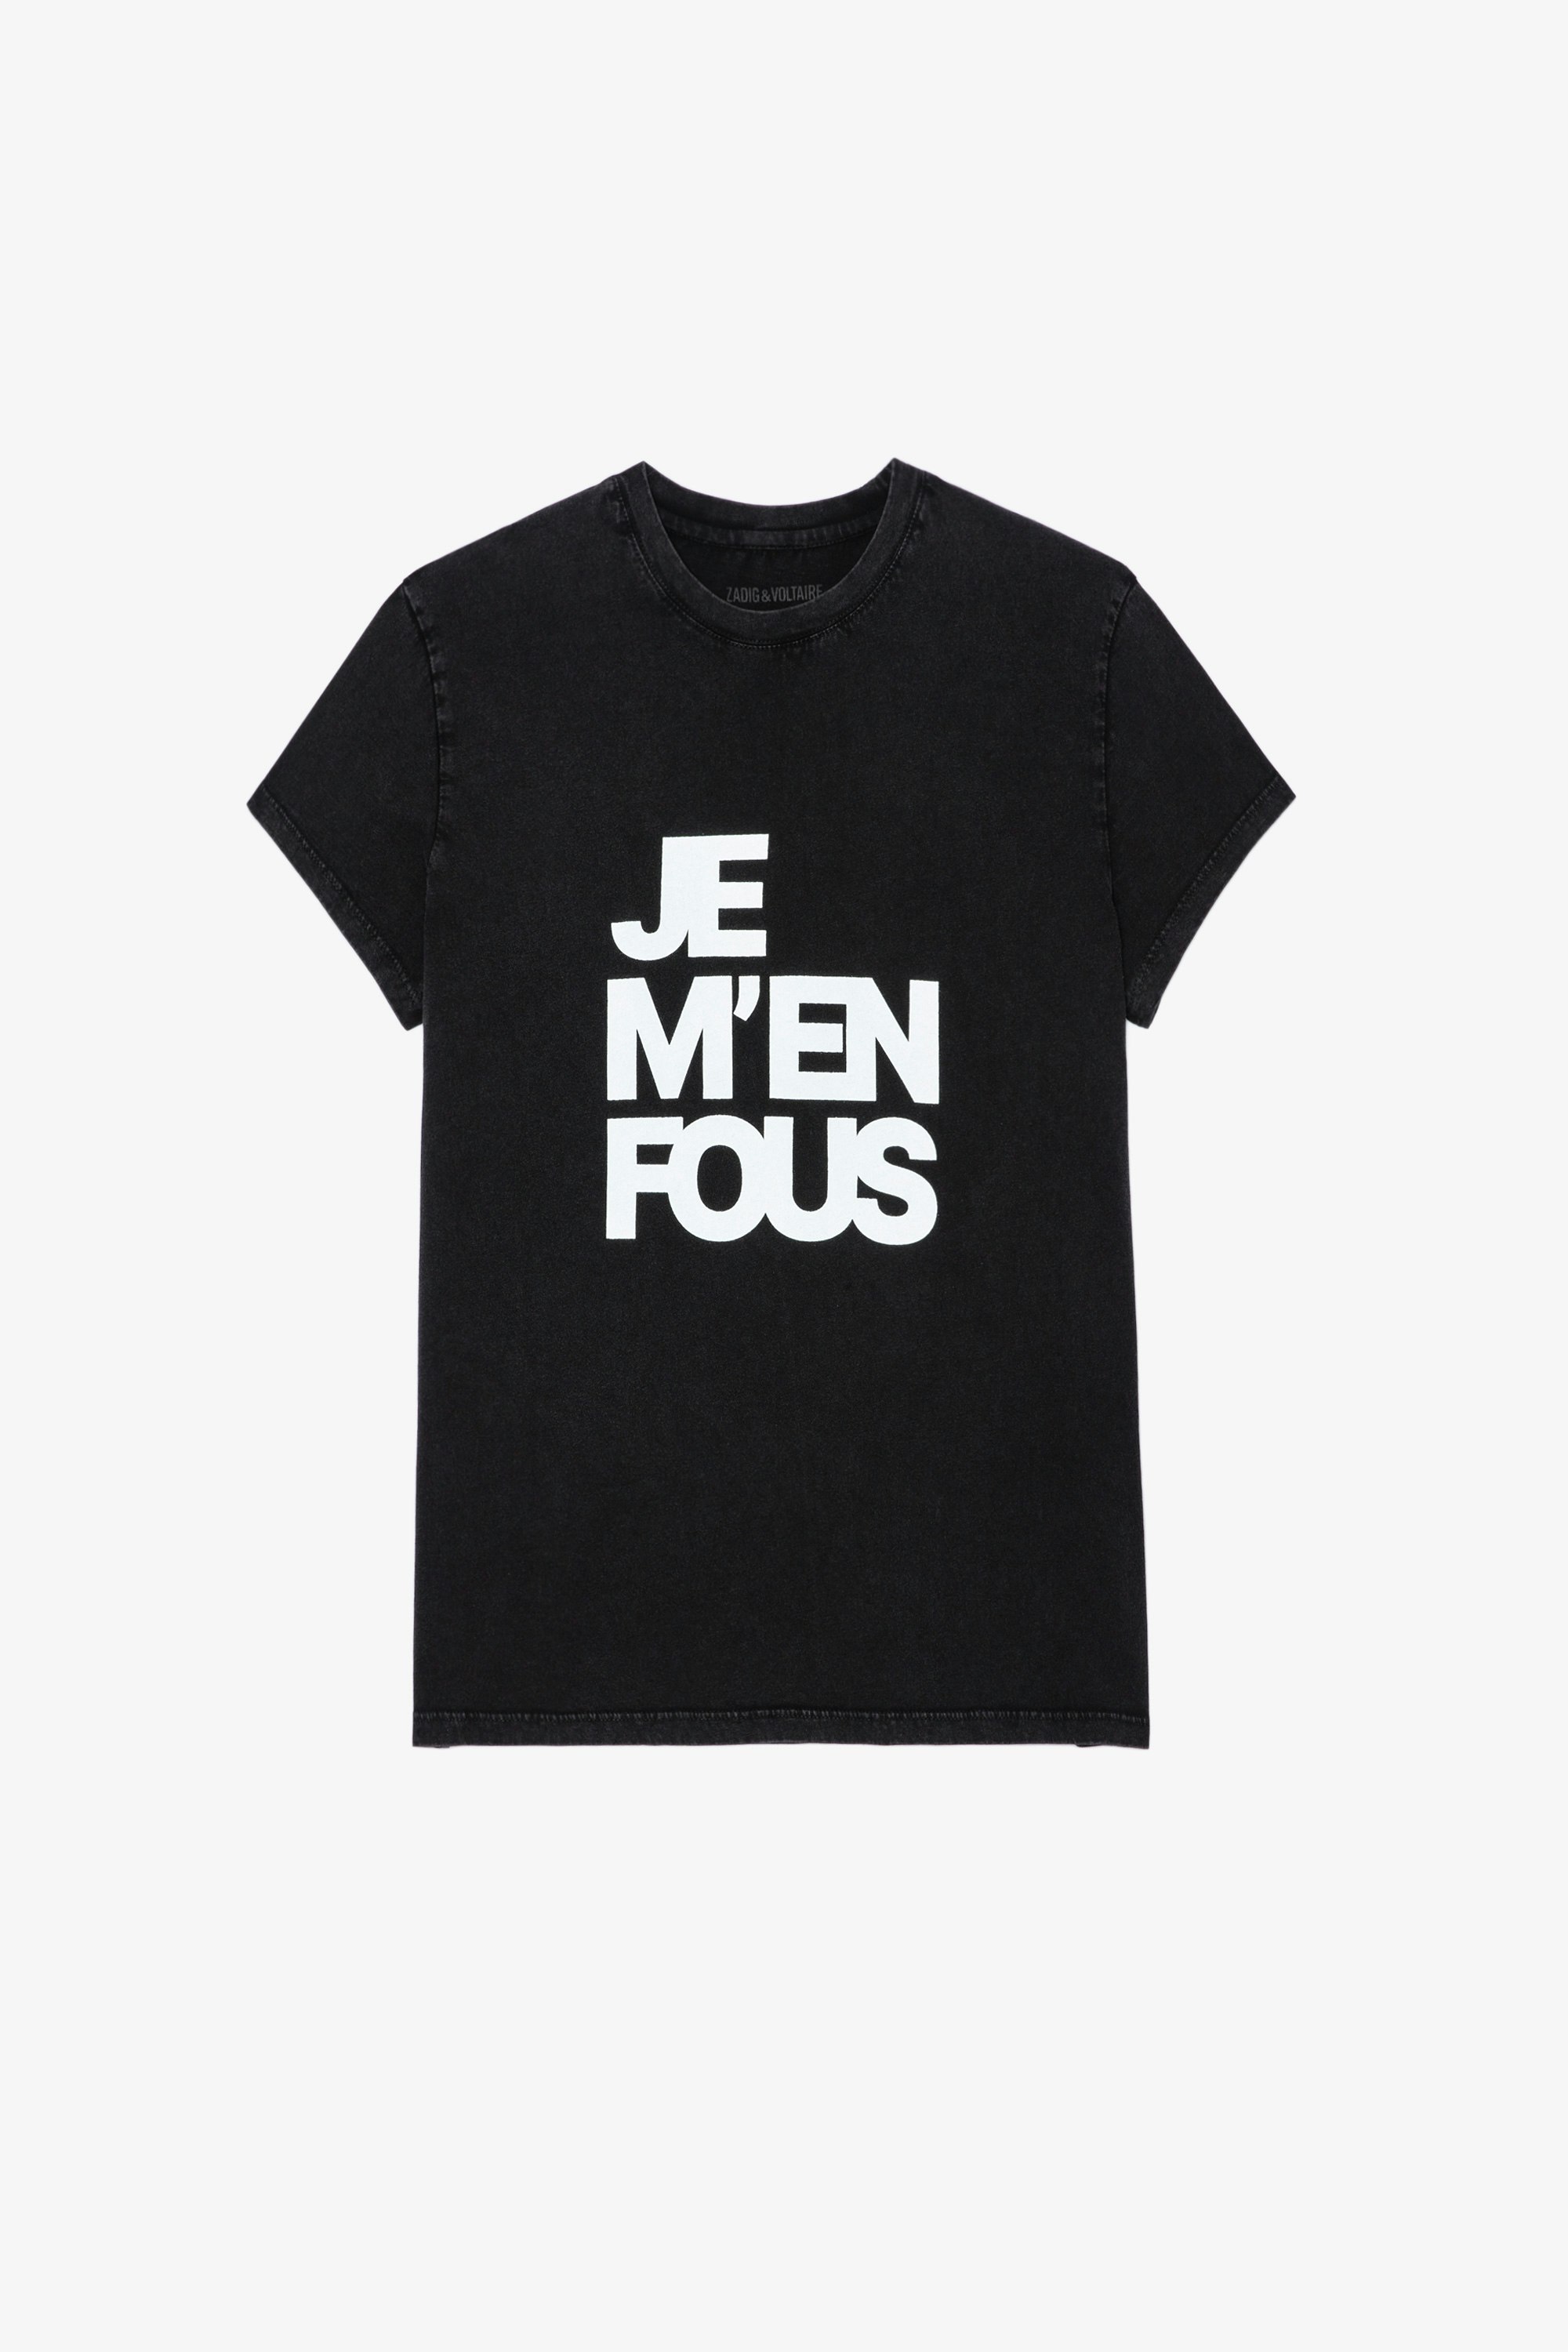 Zoe T-shirt Women’s black cotton T-shirt with “Je m’en fous” slogan